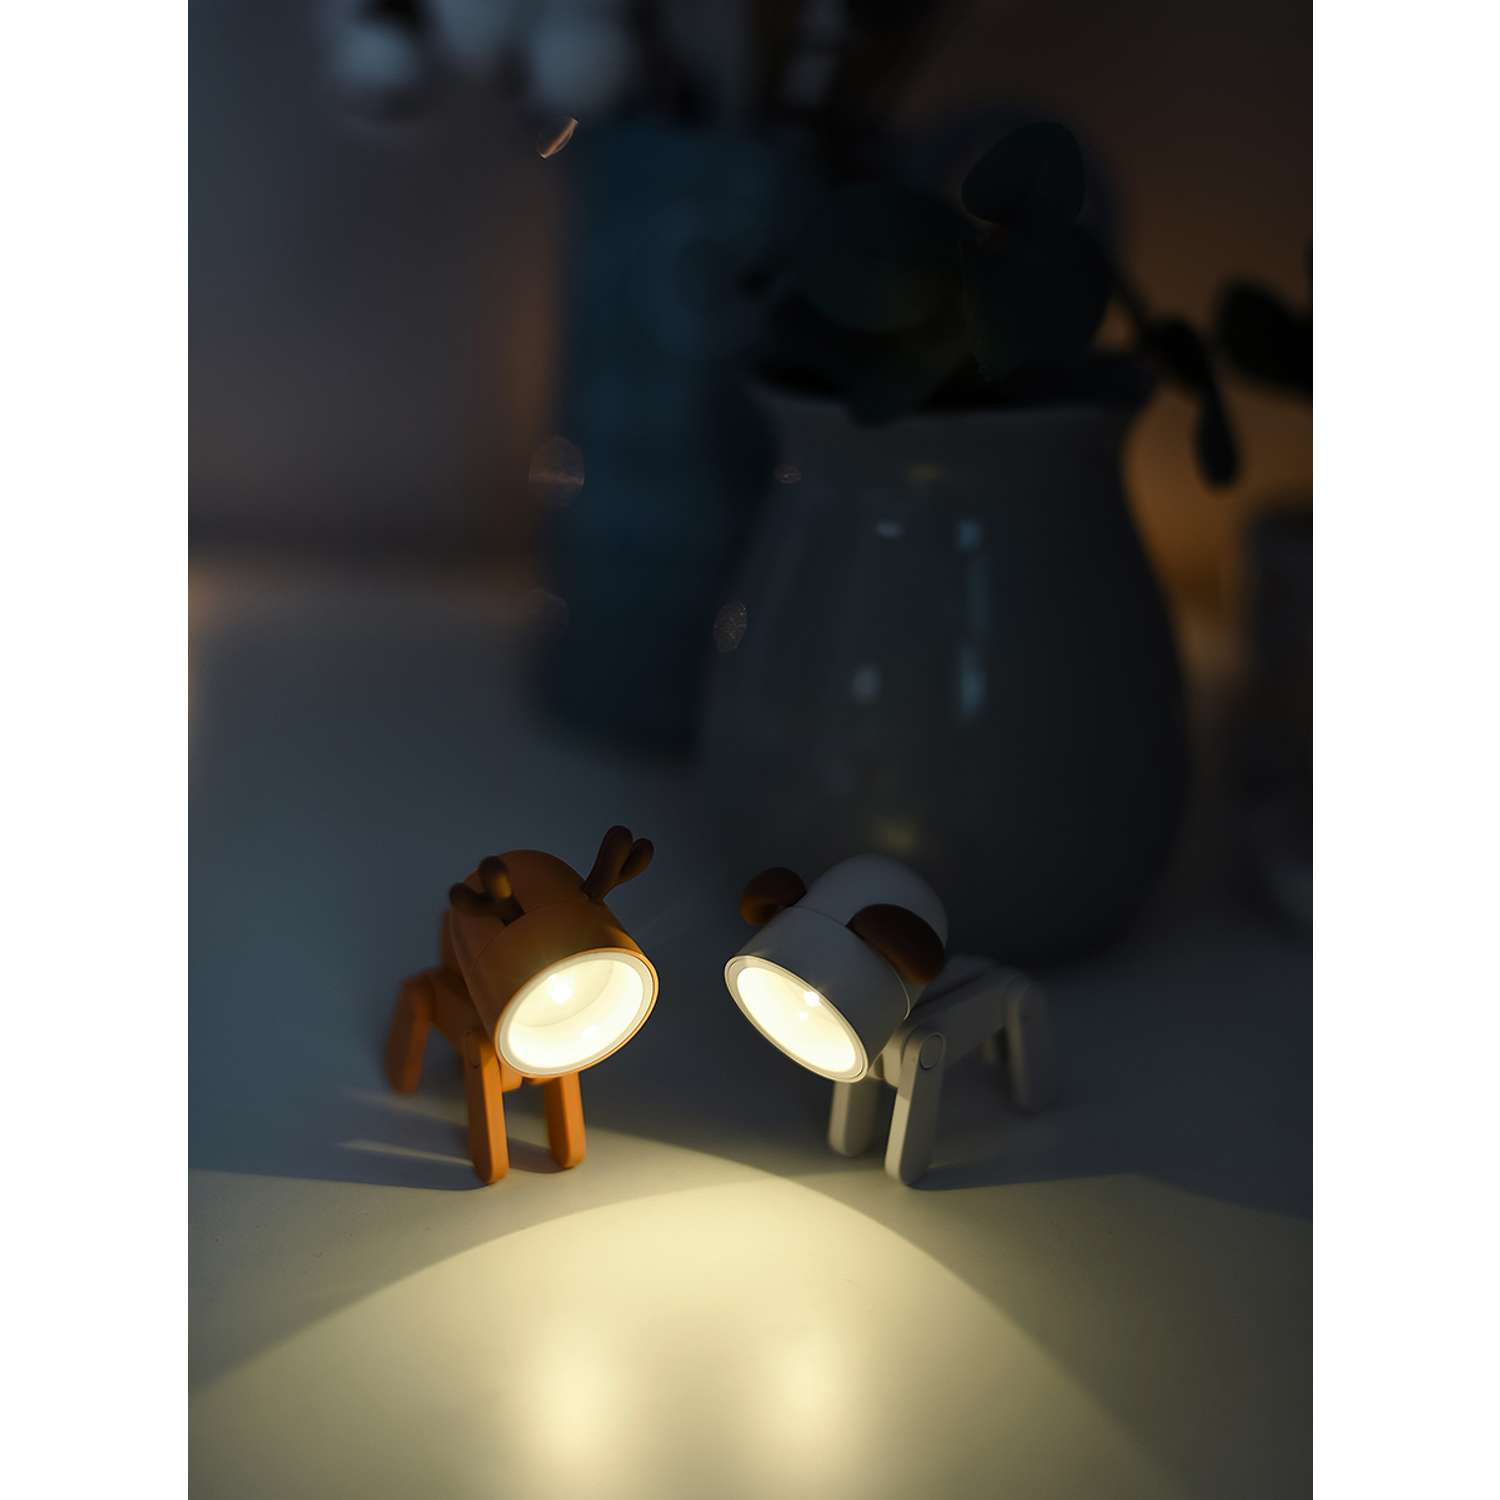 Светильник ночник LATS игрушка робот олень на батарейках - фото 15